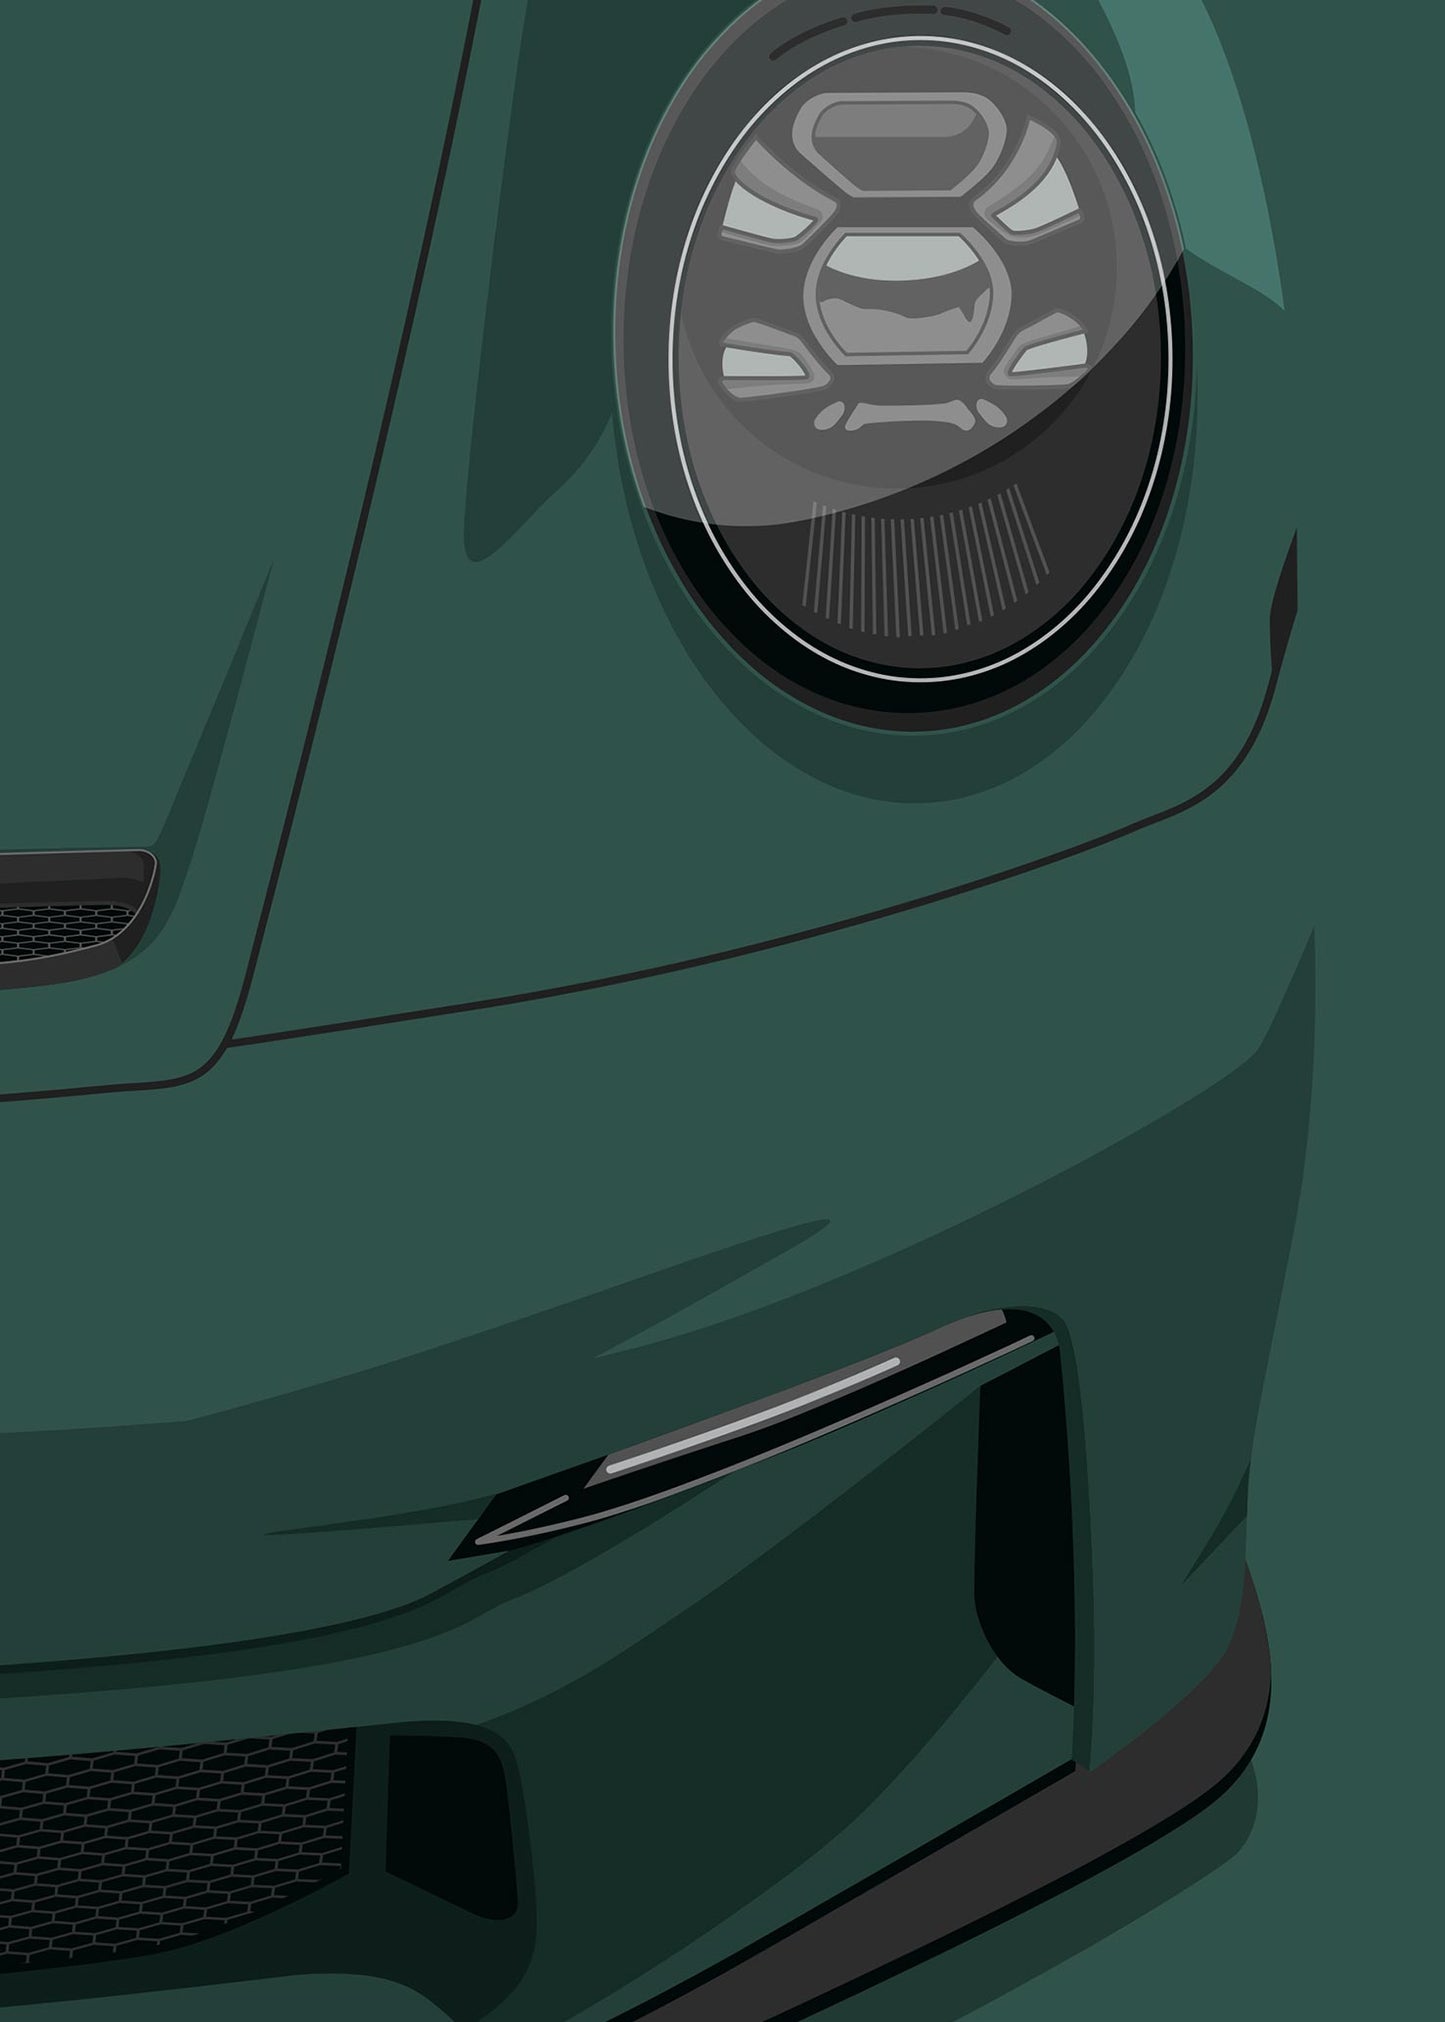 2020 Porsche 911 (992) GT3 Touring - Oak Green - poster print